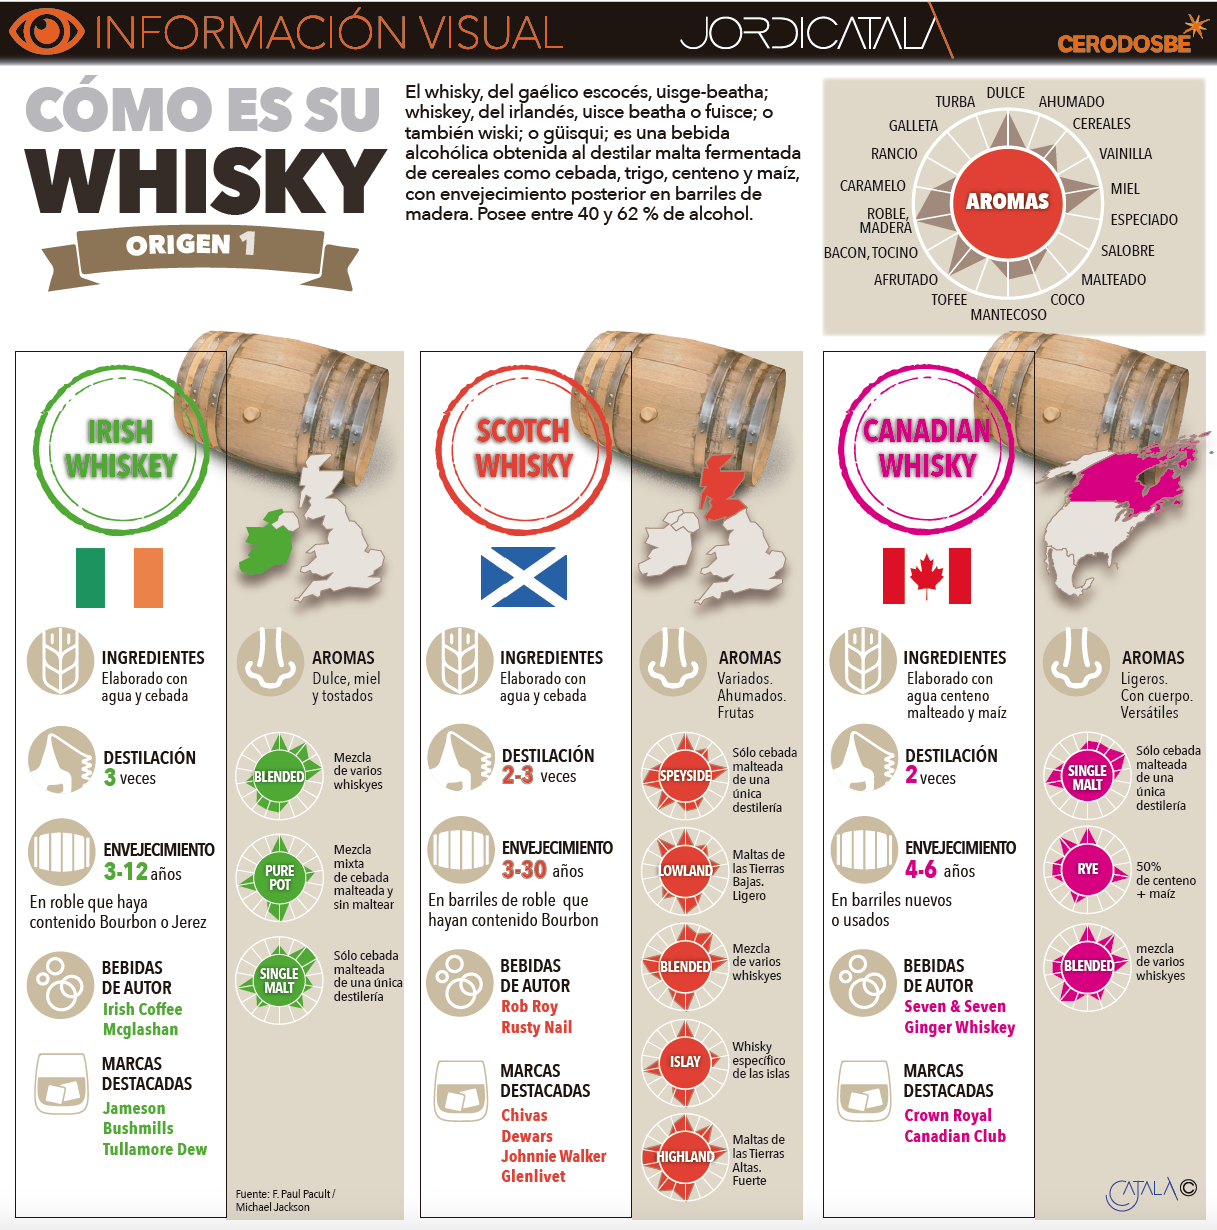 Info 1: Whisky